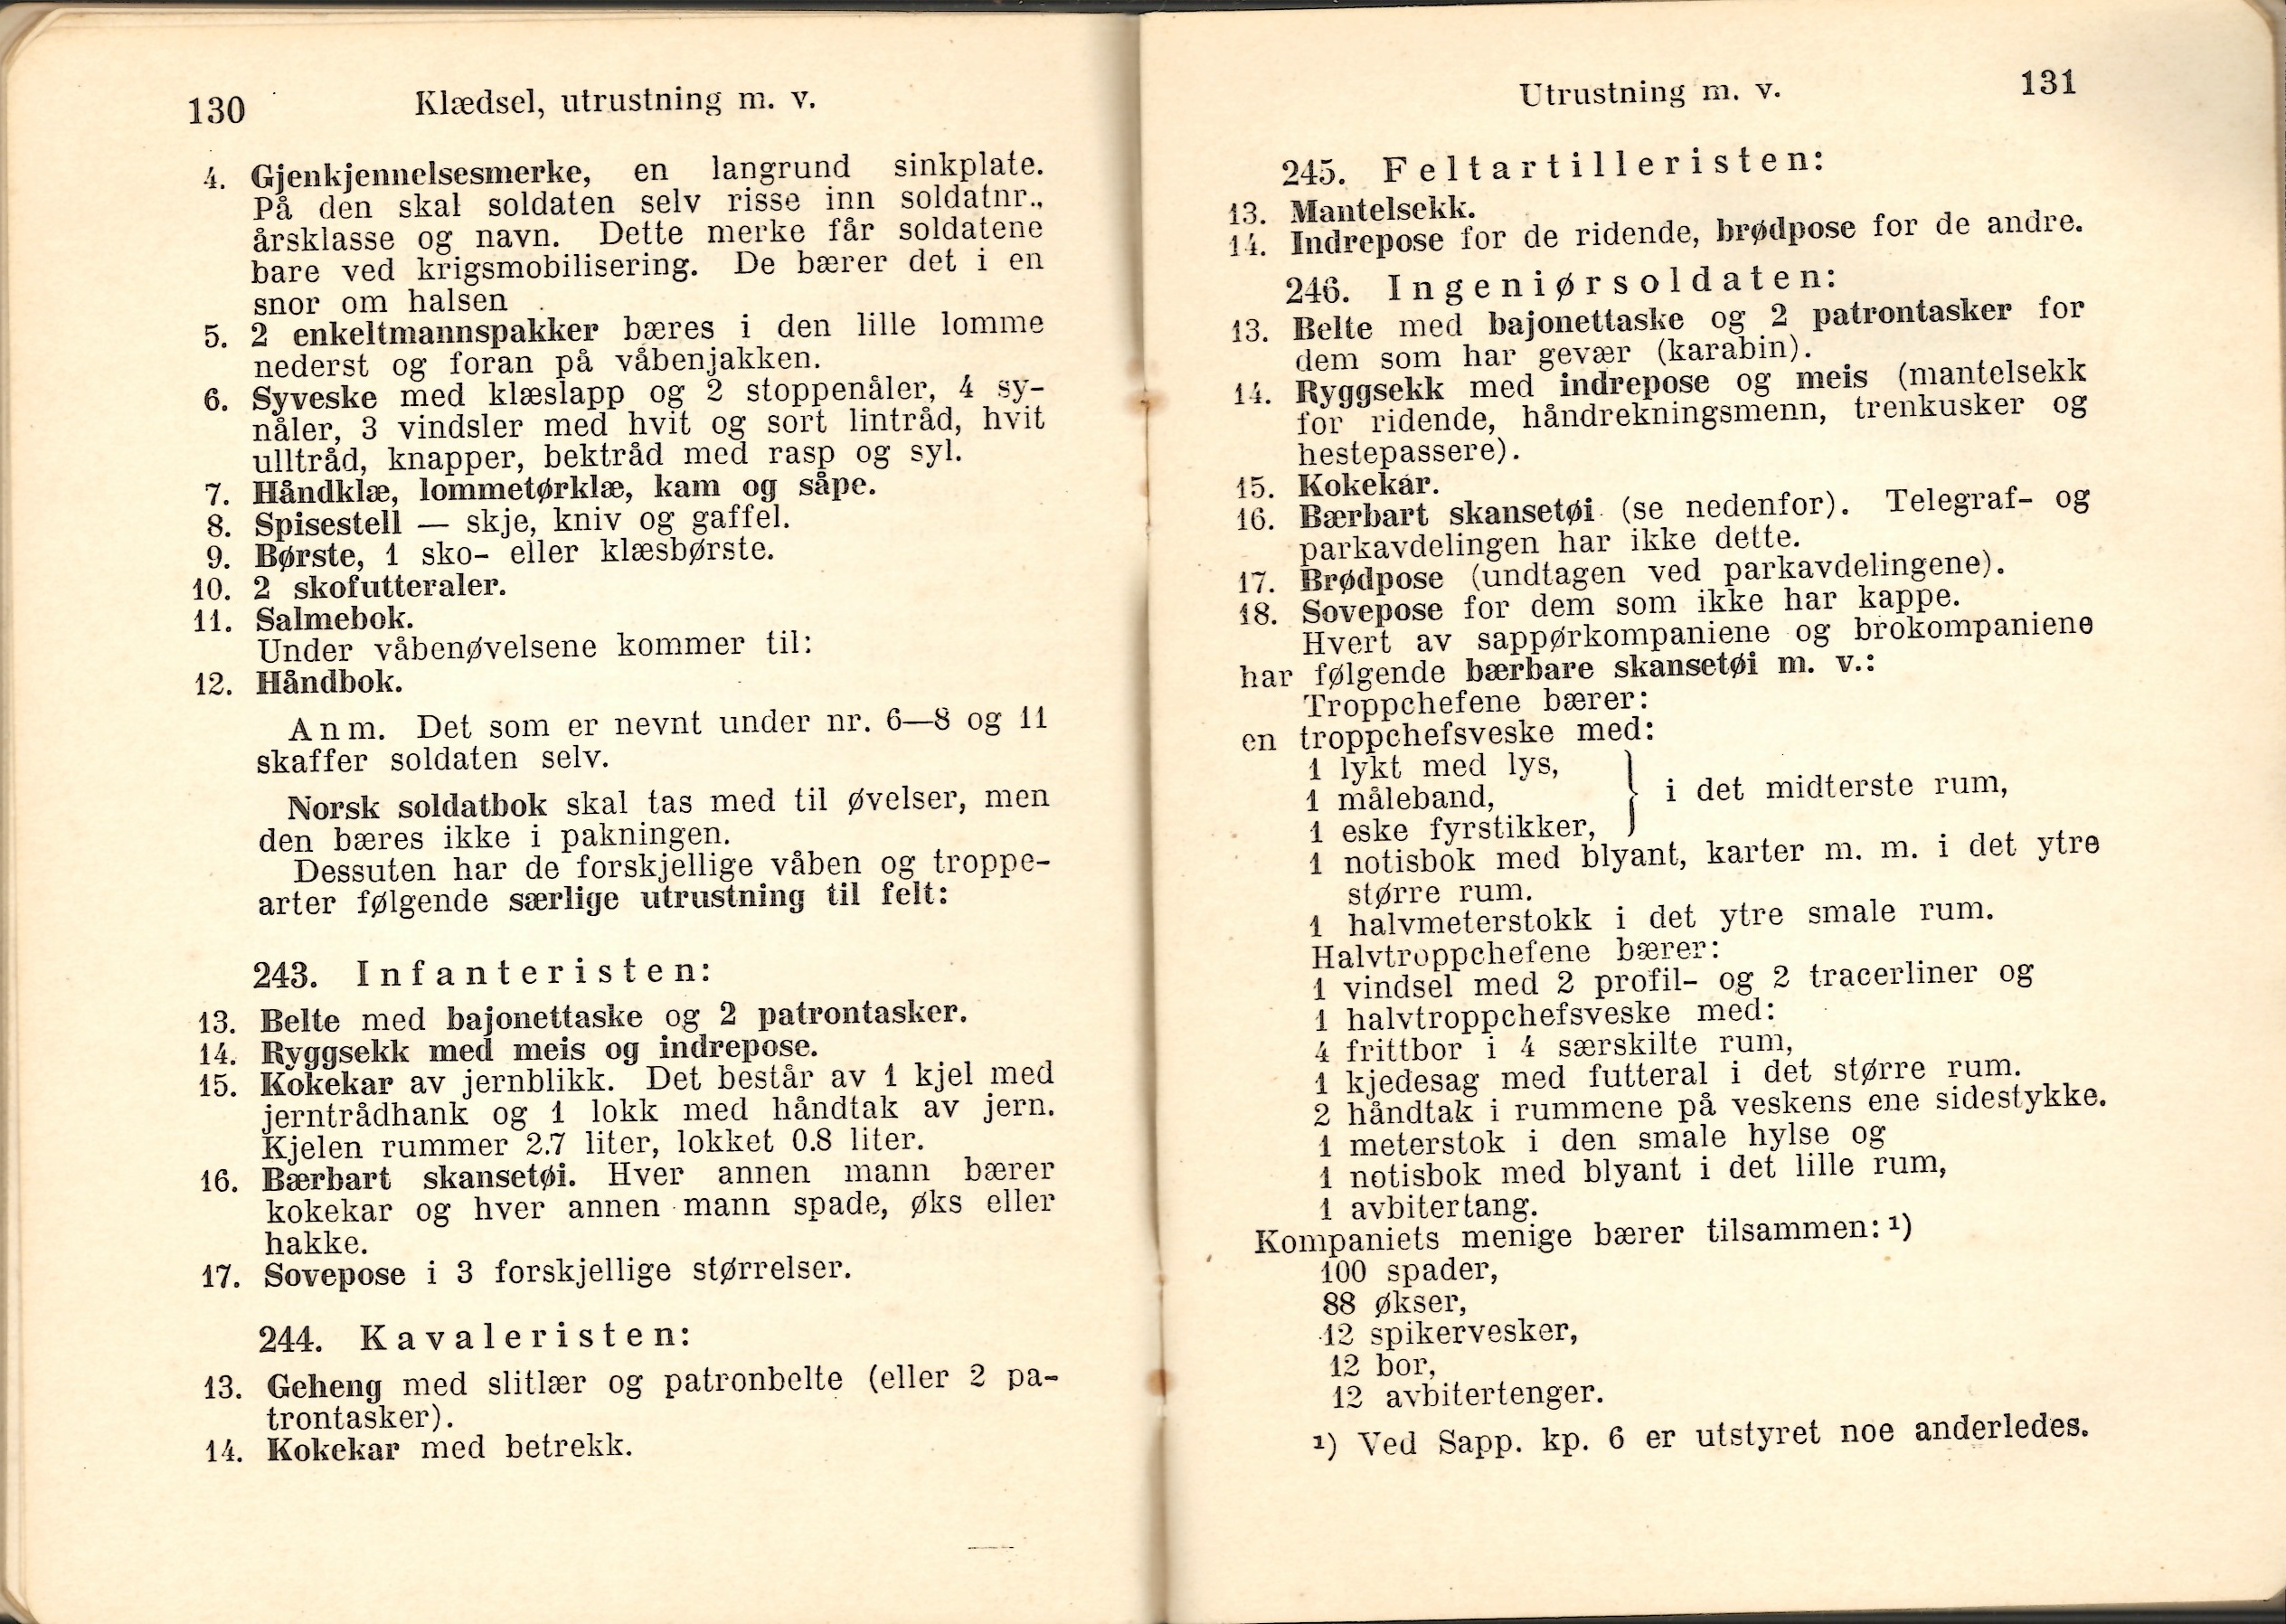 ./doc/reglement/Haandbok1925/Haandbok-for-infanteristen-1925-18.jpg